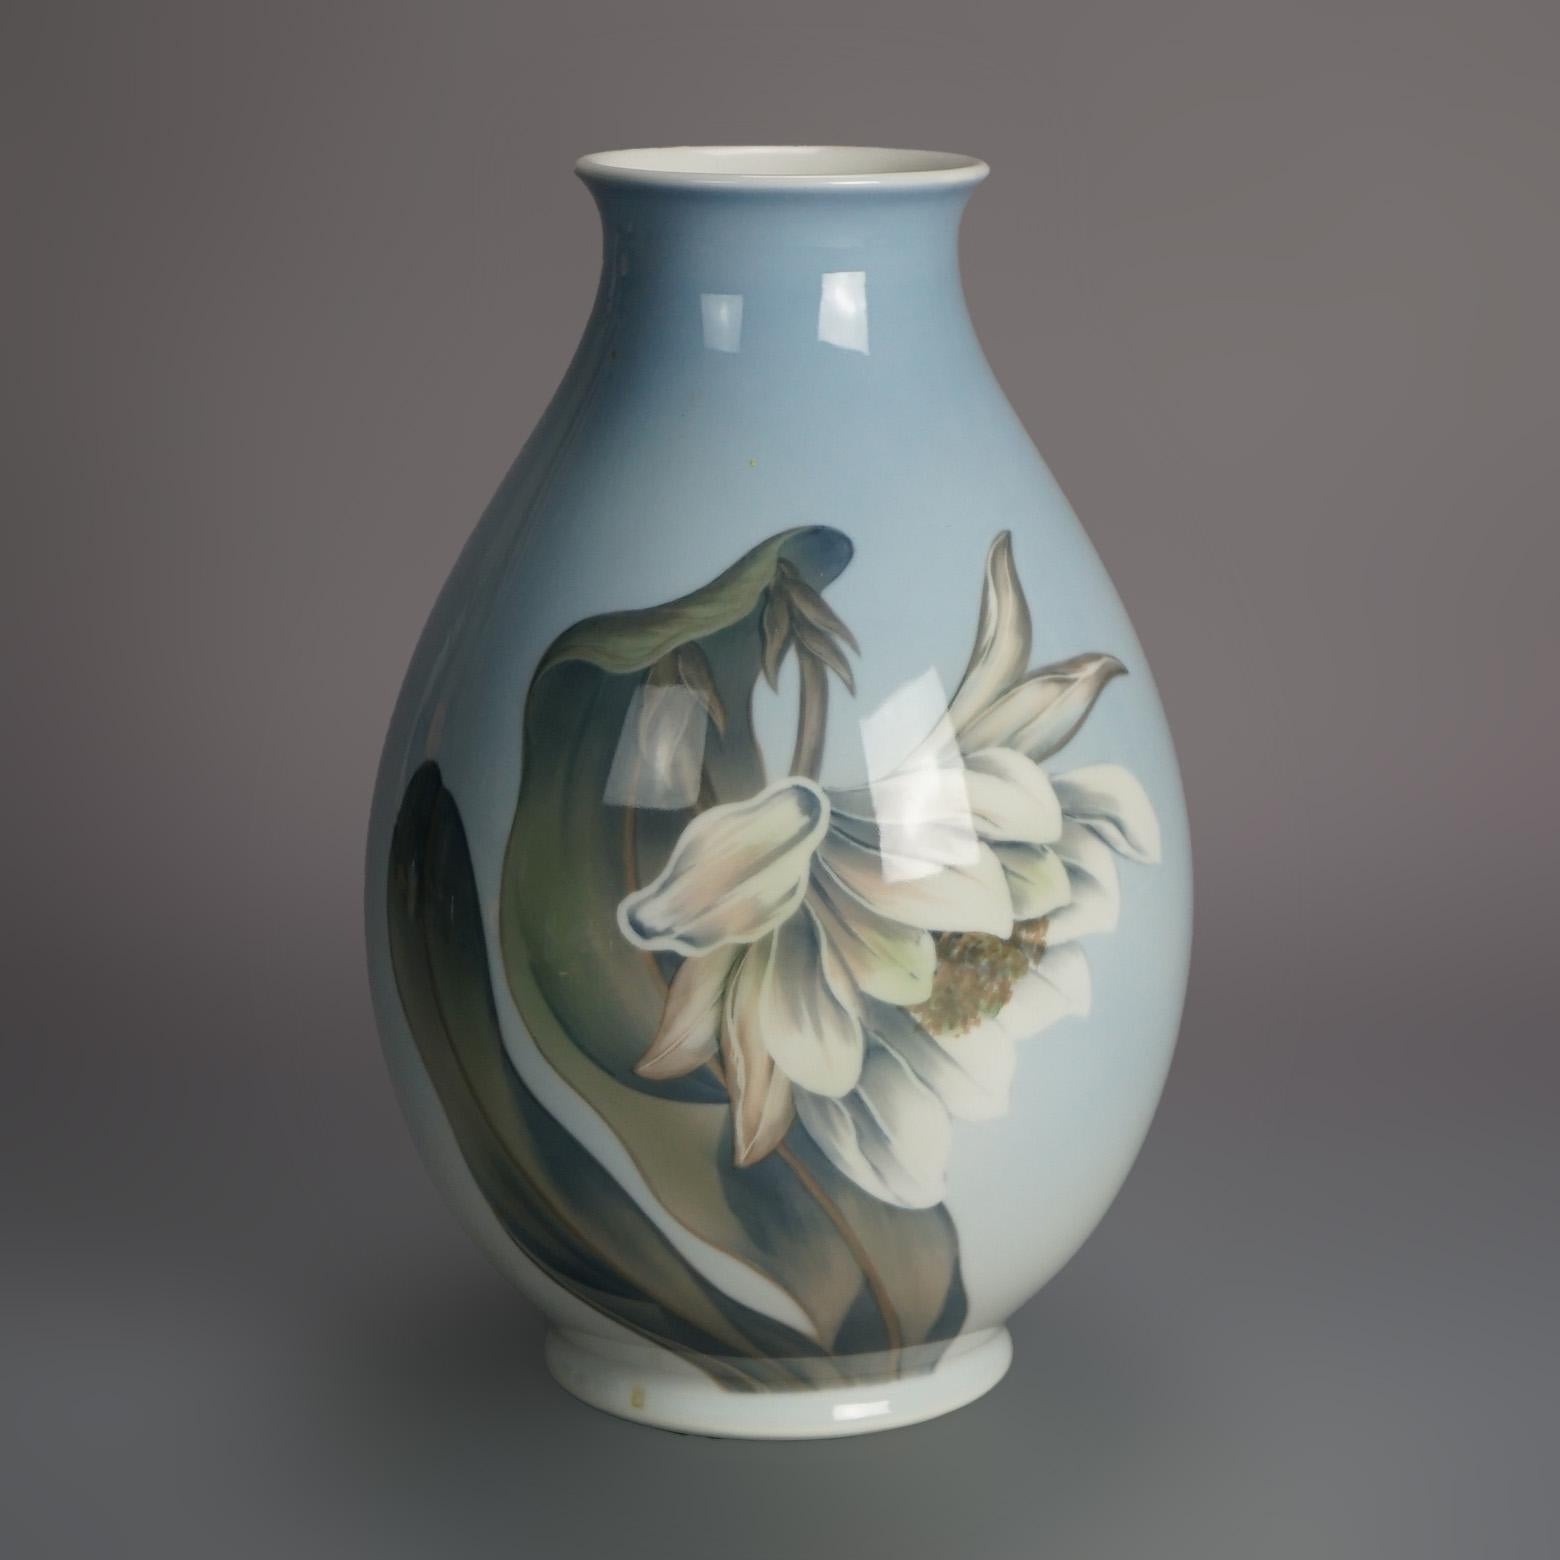 Vase ancien en porcelaine de Royal Copenhagen peint à la main avec des papillons C1930

Dimensions - 11.25 